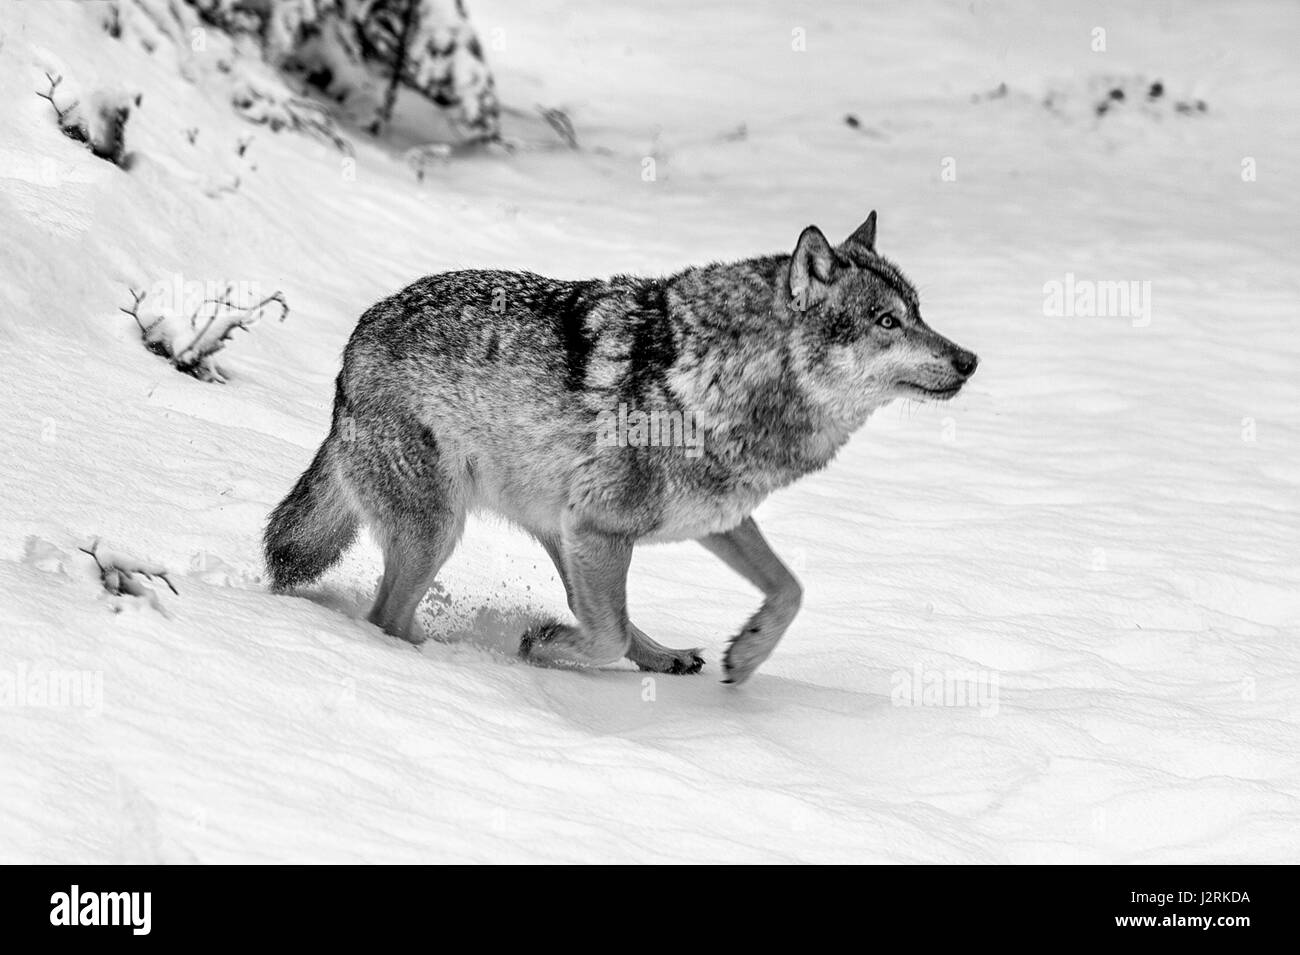 Belle adulte seul loup gris (Canis lupus) représenté dans des bois enneigés au milieu de l'hiver. (Beaux-arts, High Key, noir et blanc) Banque D'Images